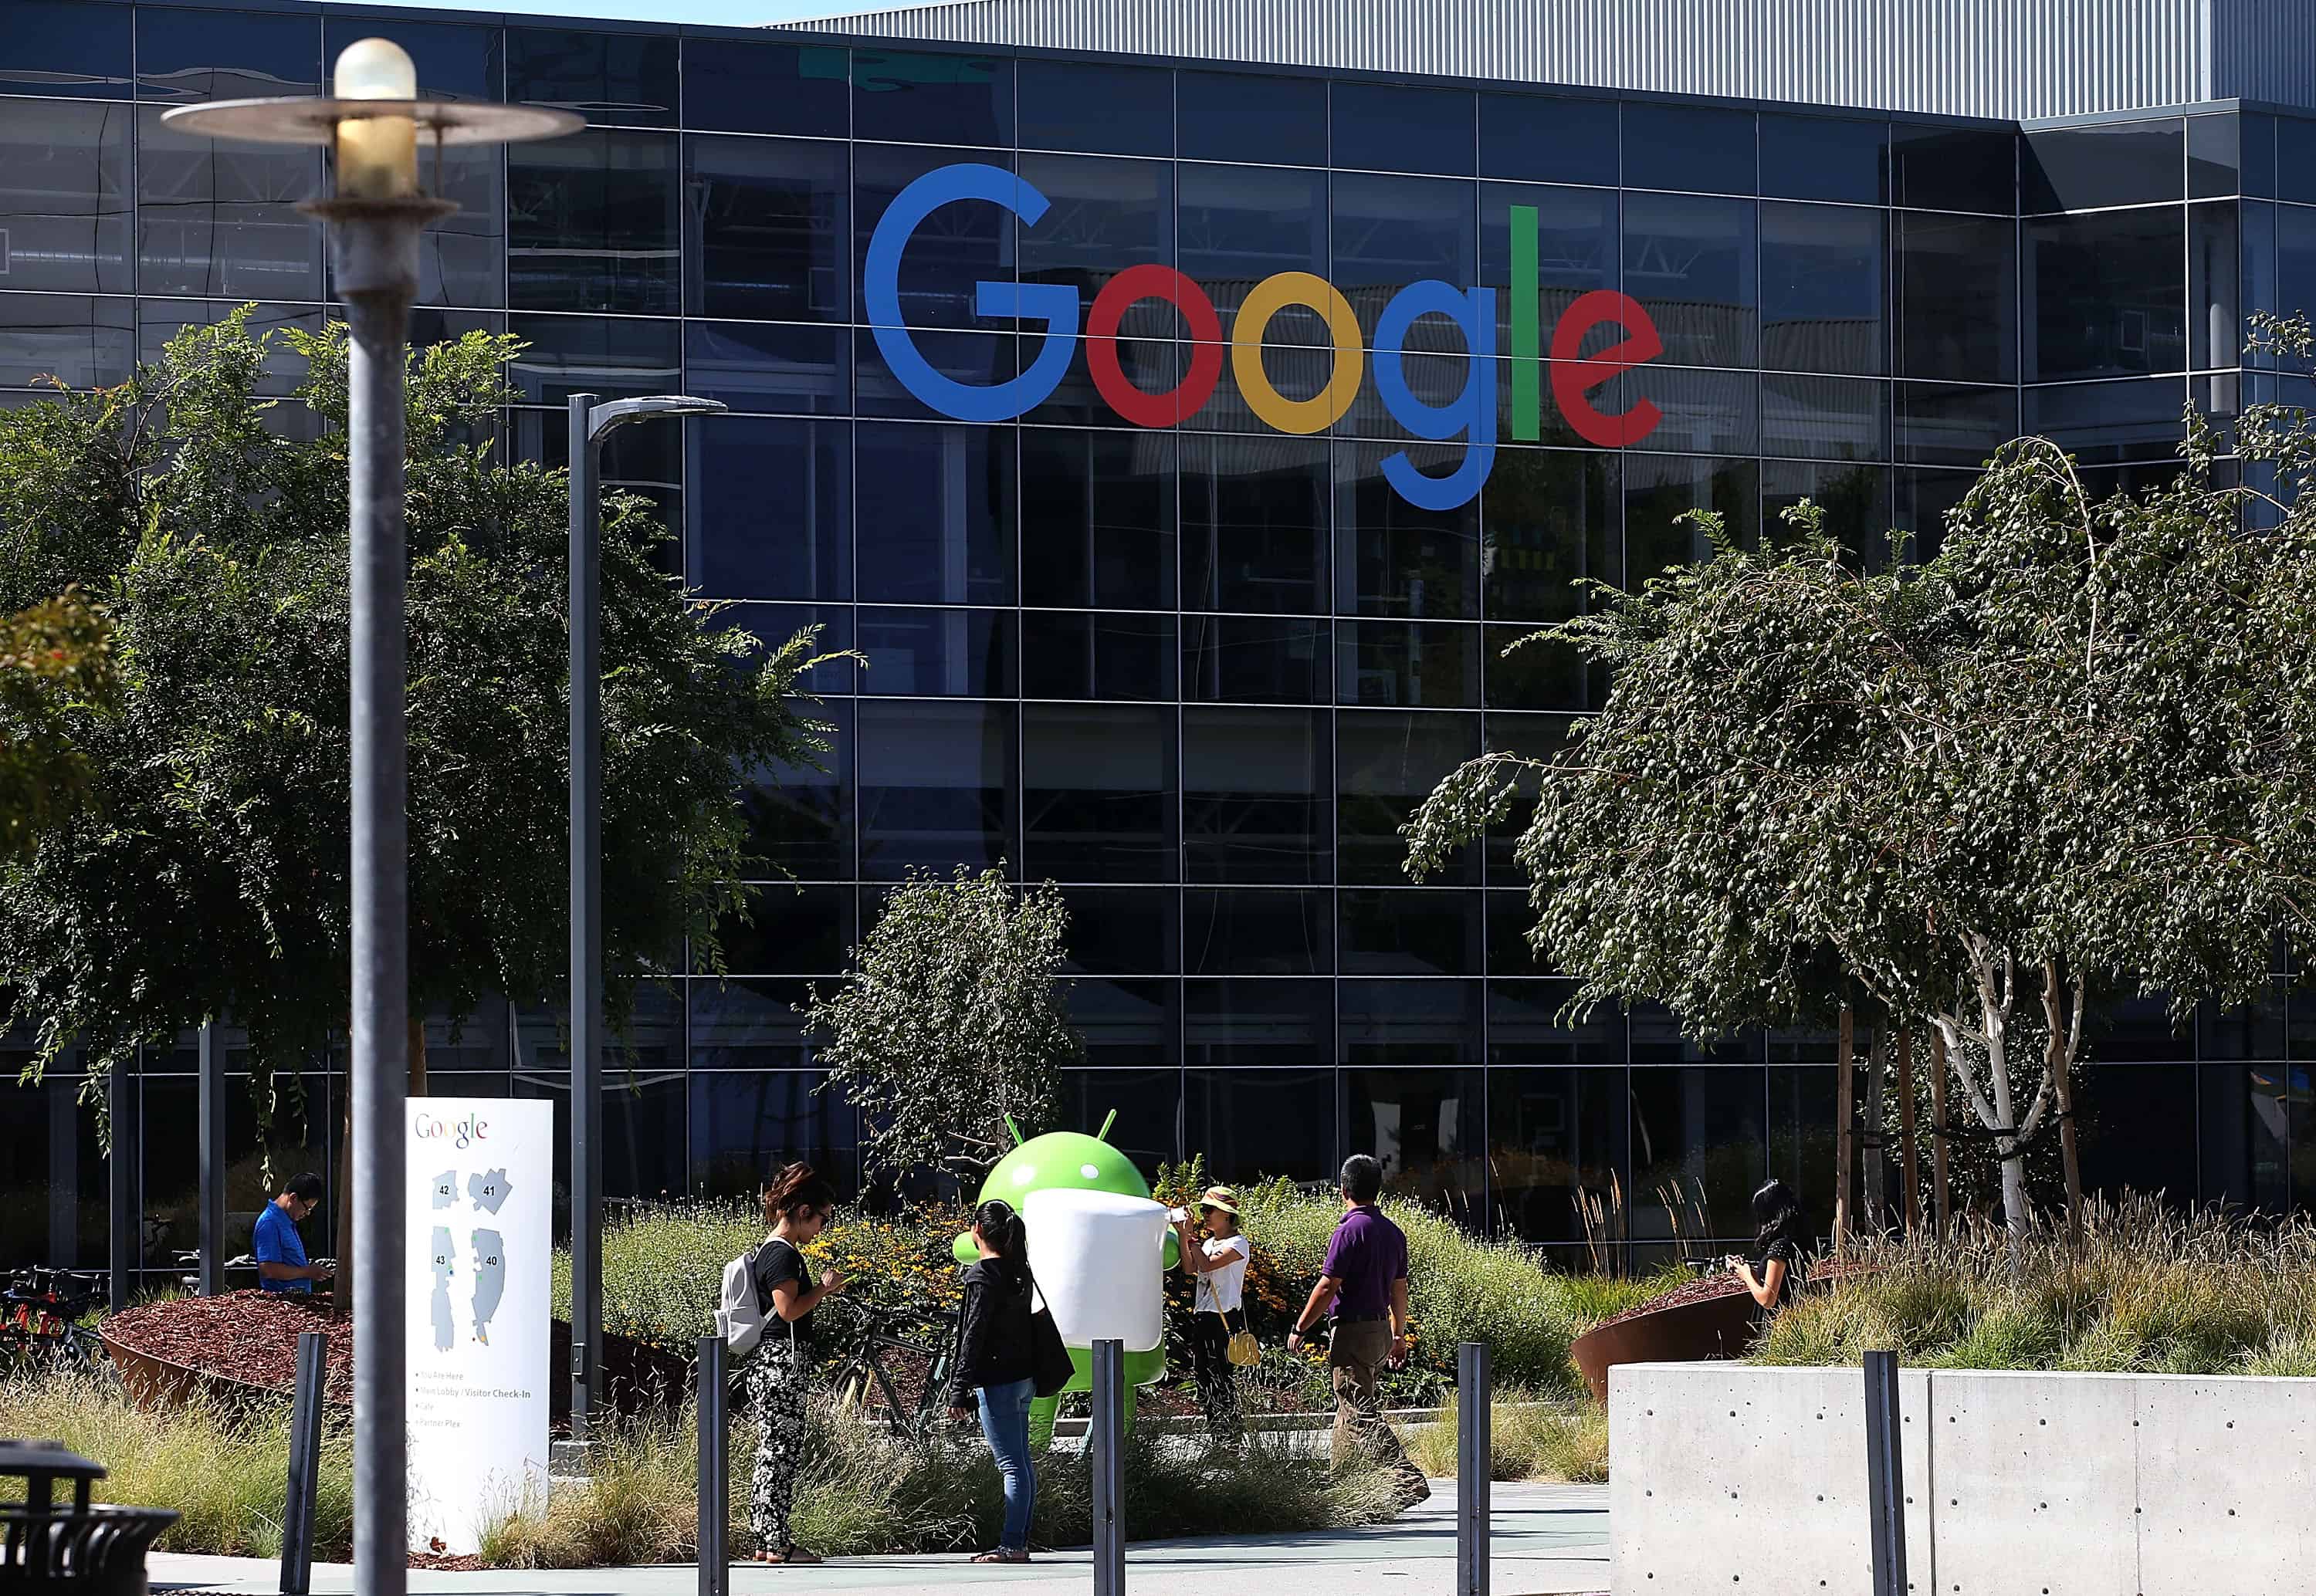 Новий логотип Google розміщений у штаб-квартирі Google 2 вересня 2015 року в Маунтін-В’ю, Каліфорнія. Компанія Google внесла в свій логотип найбільш драматичну зміну з 1999 року та замінила свій фірмовий шрифт із зарубками новим шрифтом під назвою Product Sans.